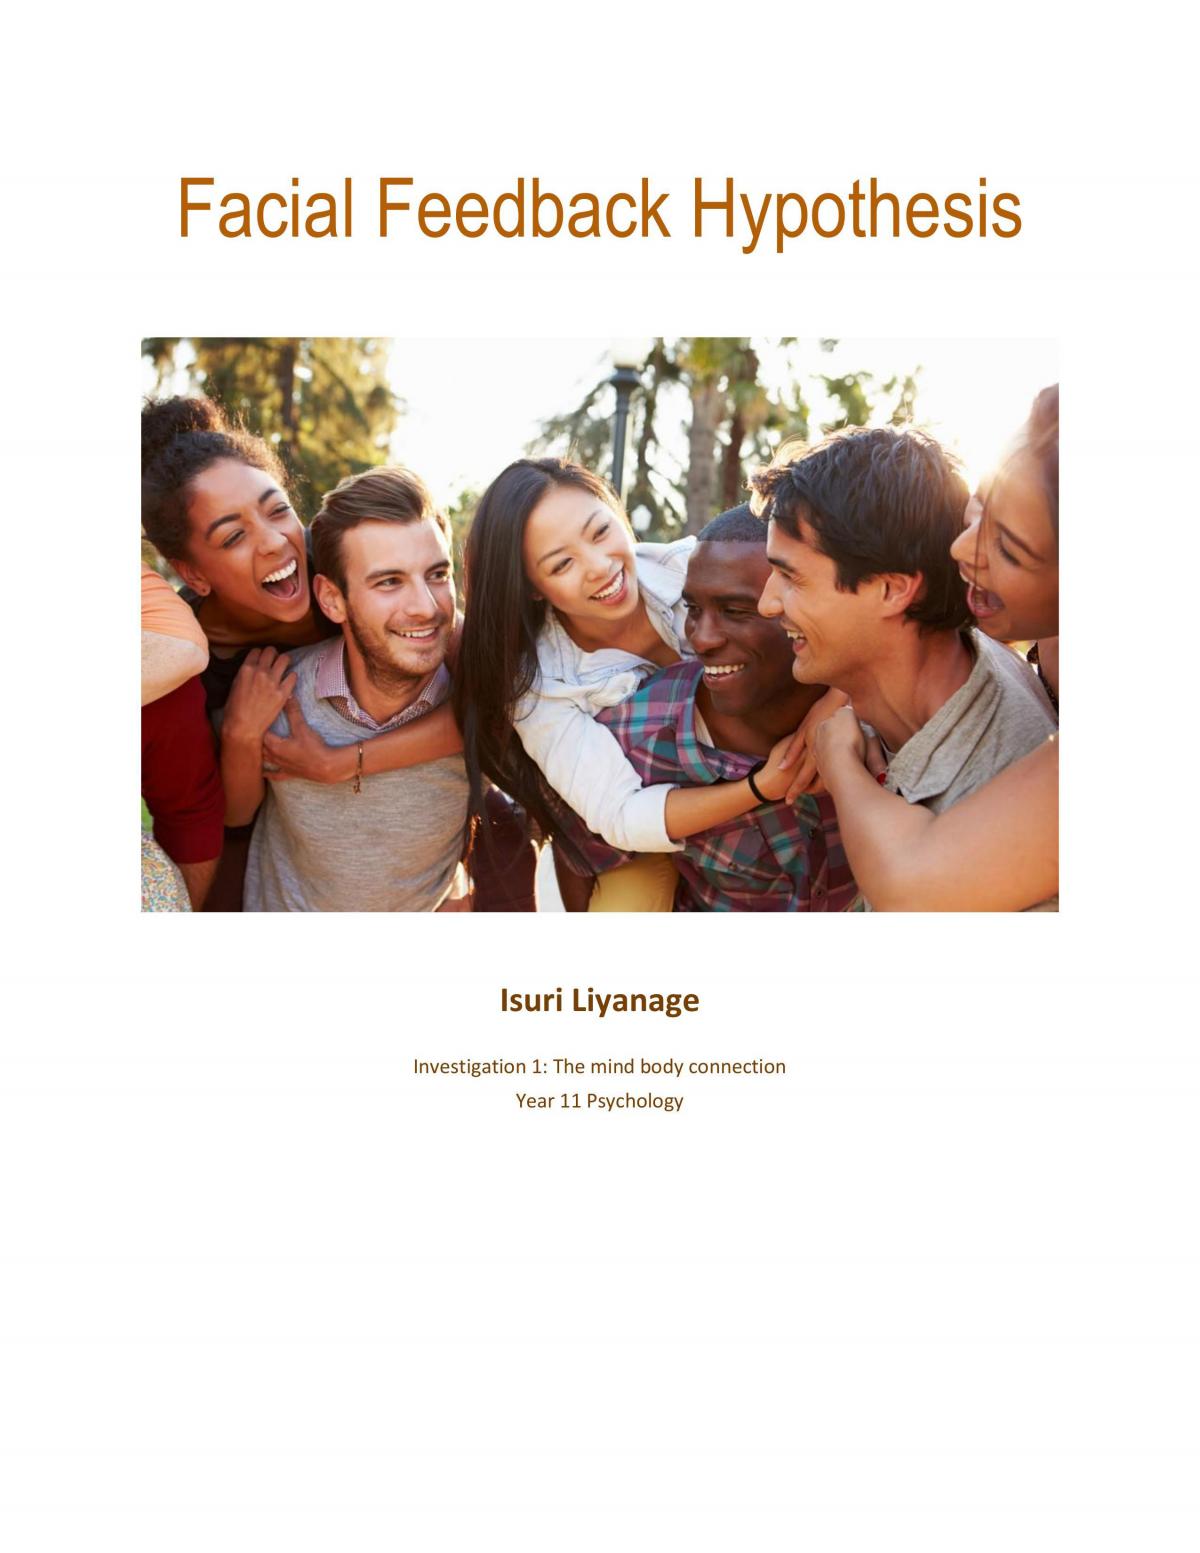 an example of the facial feedback hypothesis